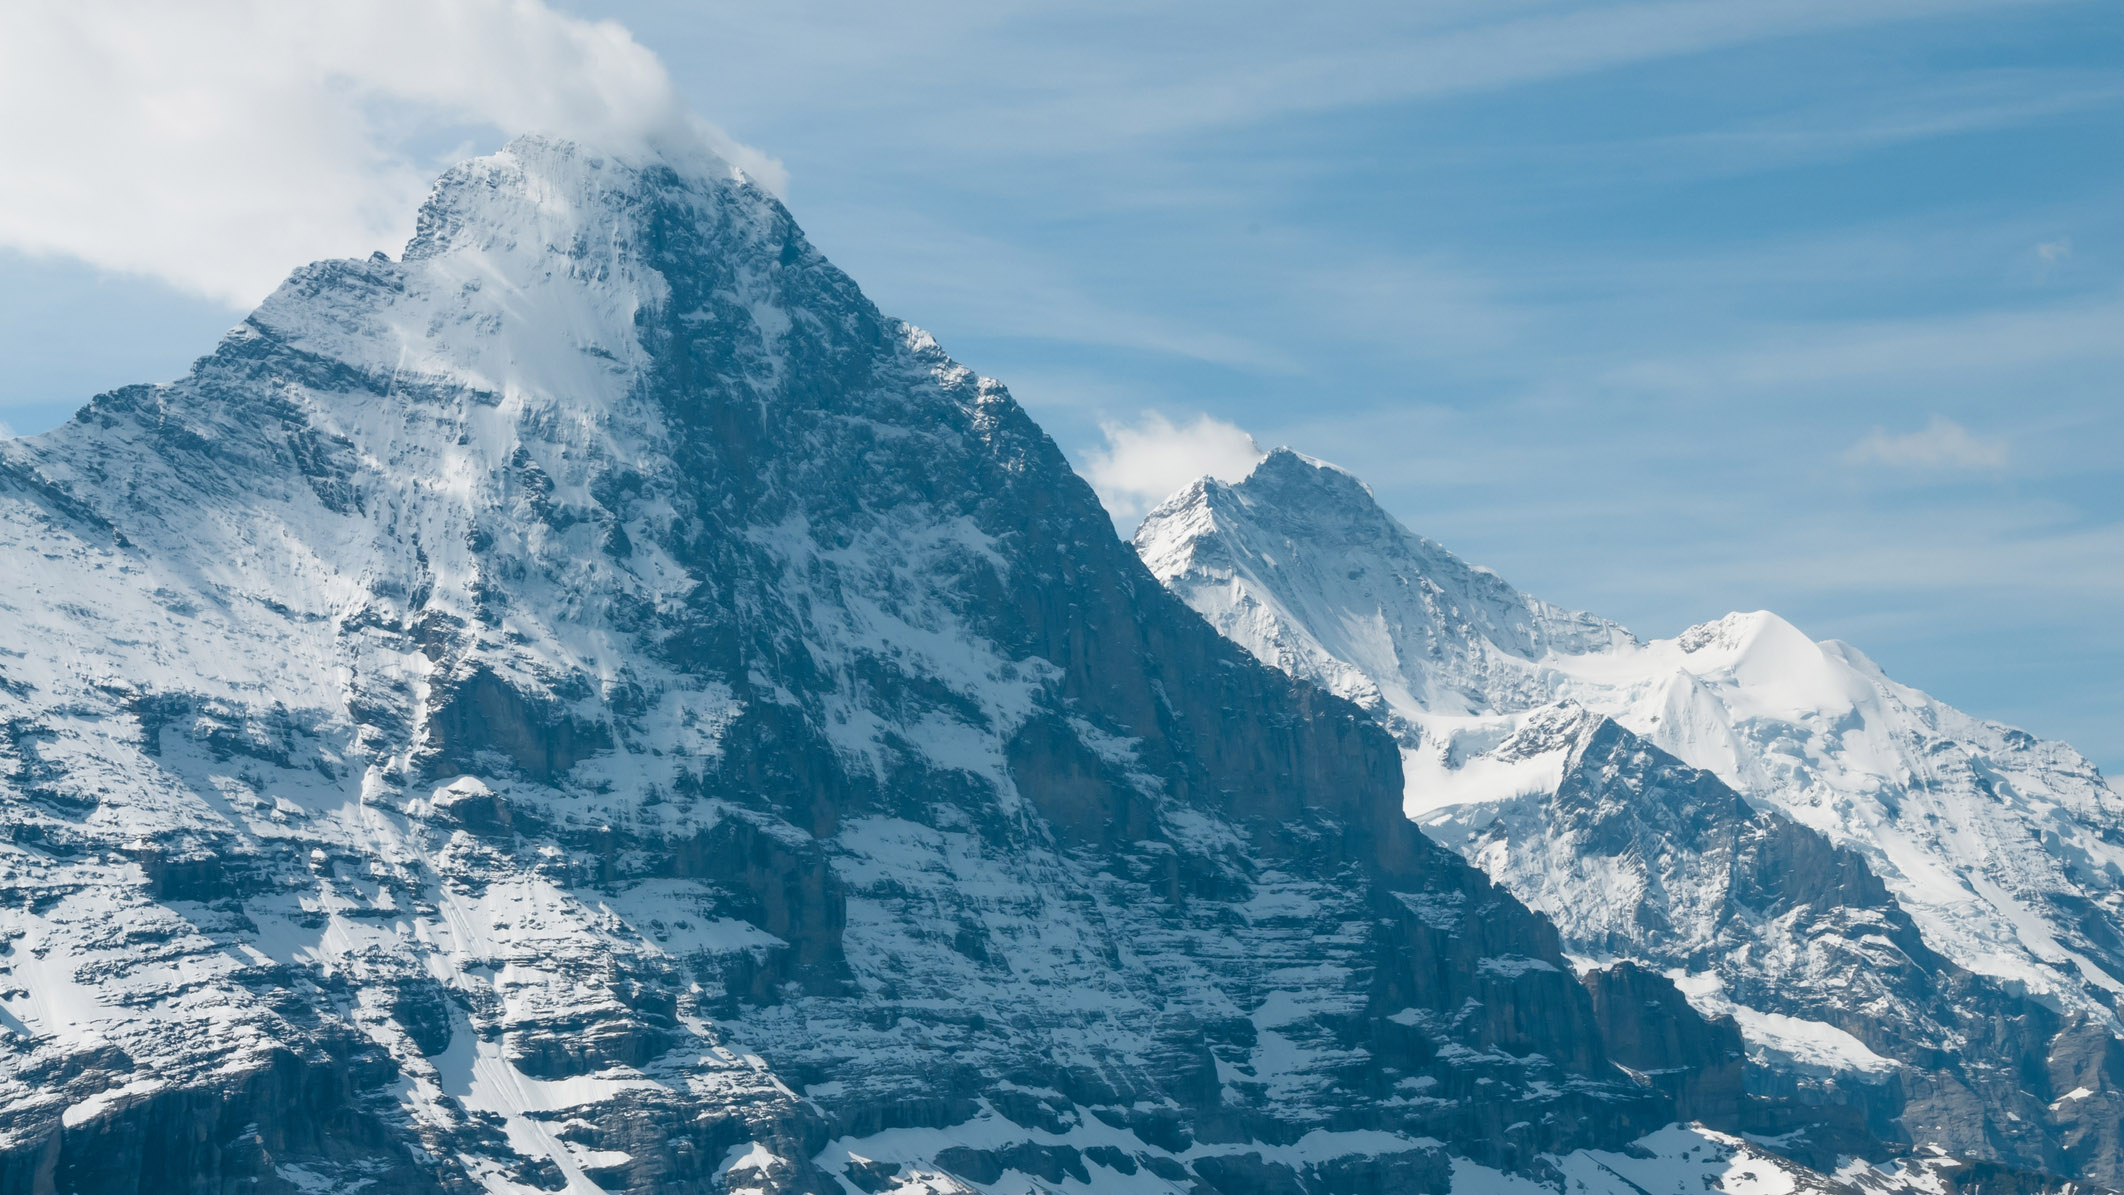 qué son los crampones: el Eiger